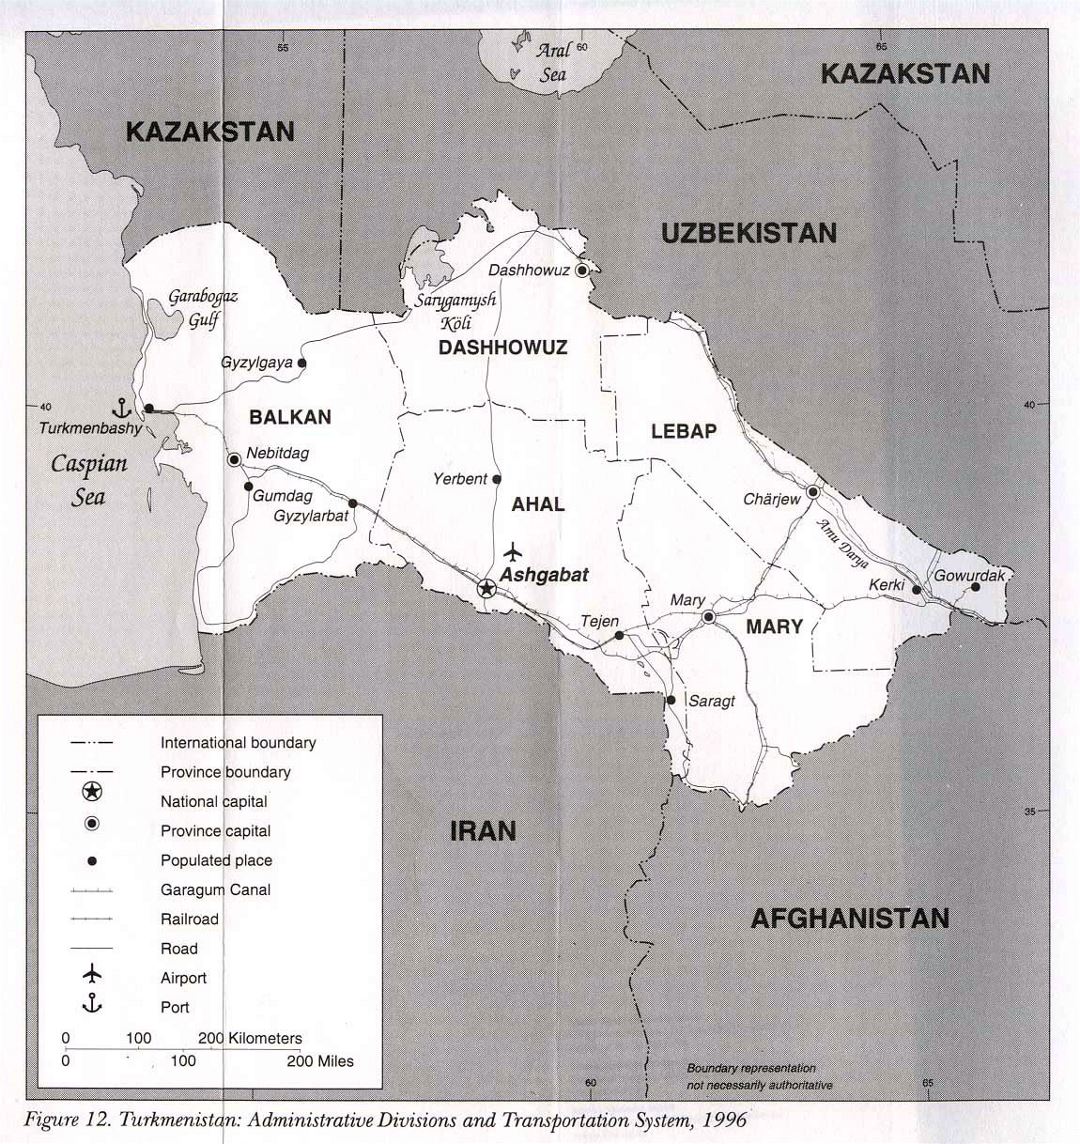 Детальная карта административных делений и транспортной системы Туркменистана - 1996